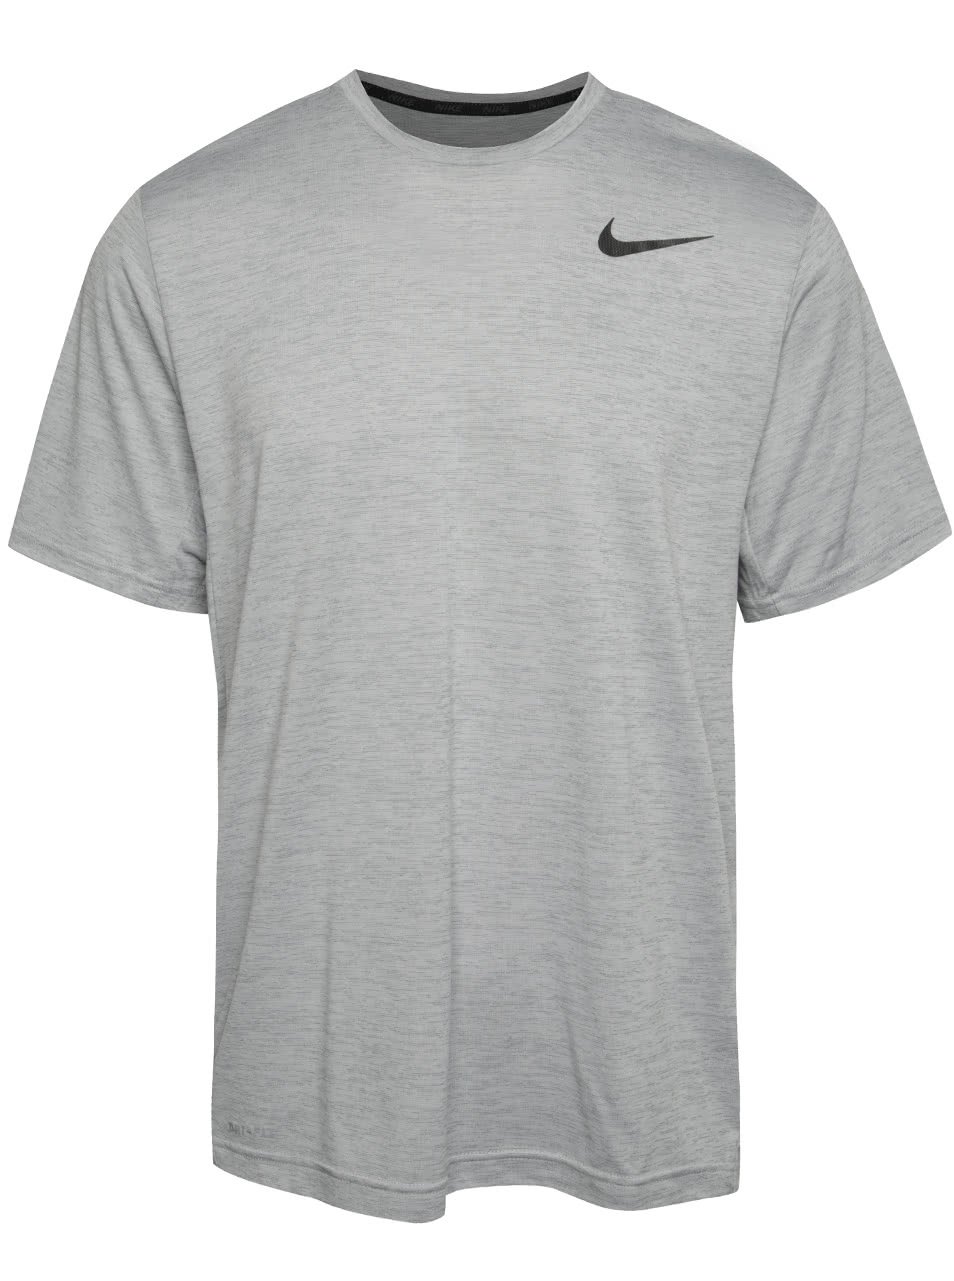 Šedé žíhané pánské triko Nike Dry